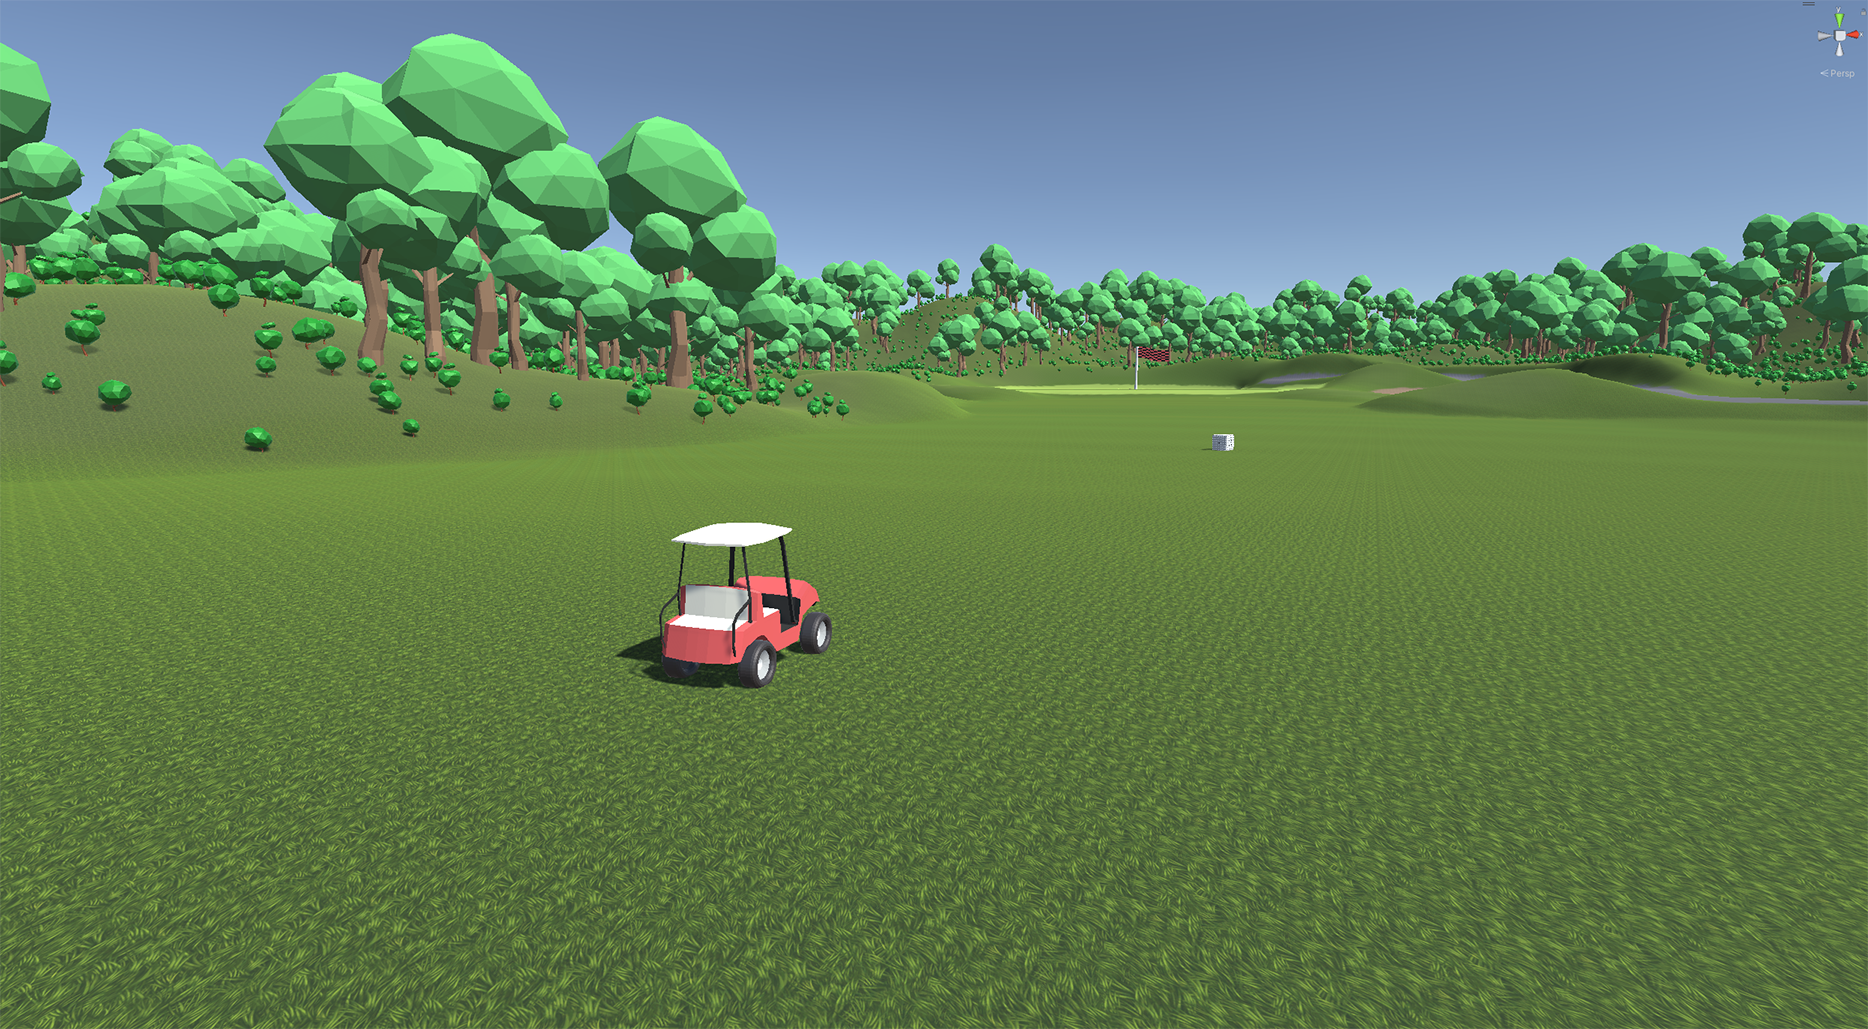 Golf Cart Golf!